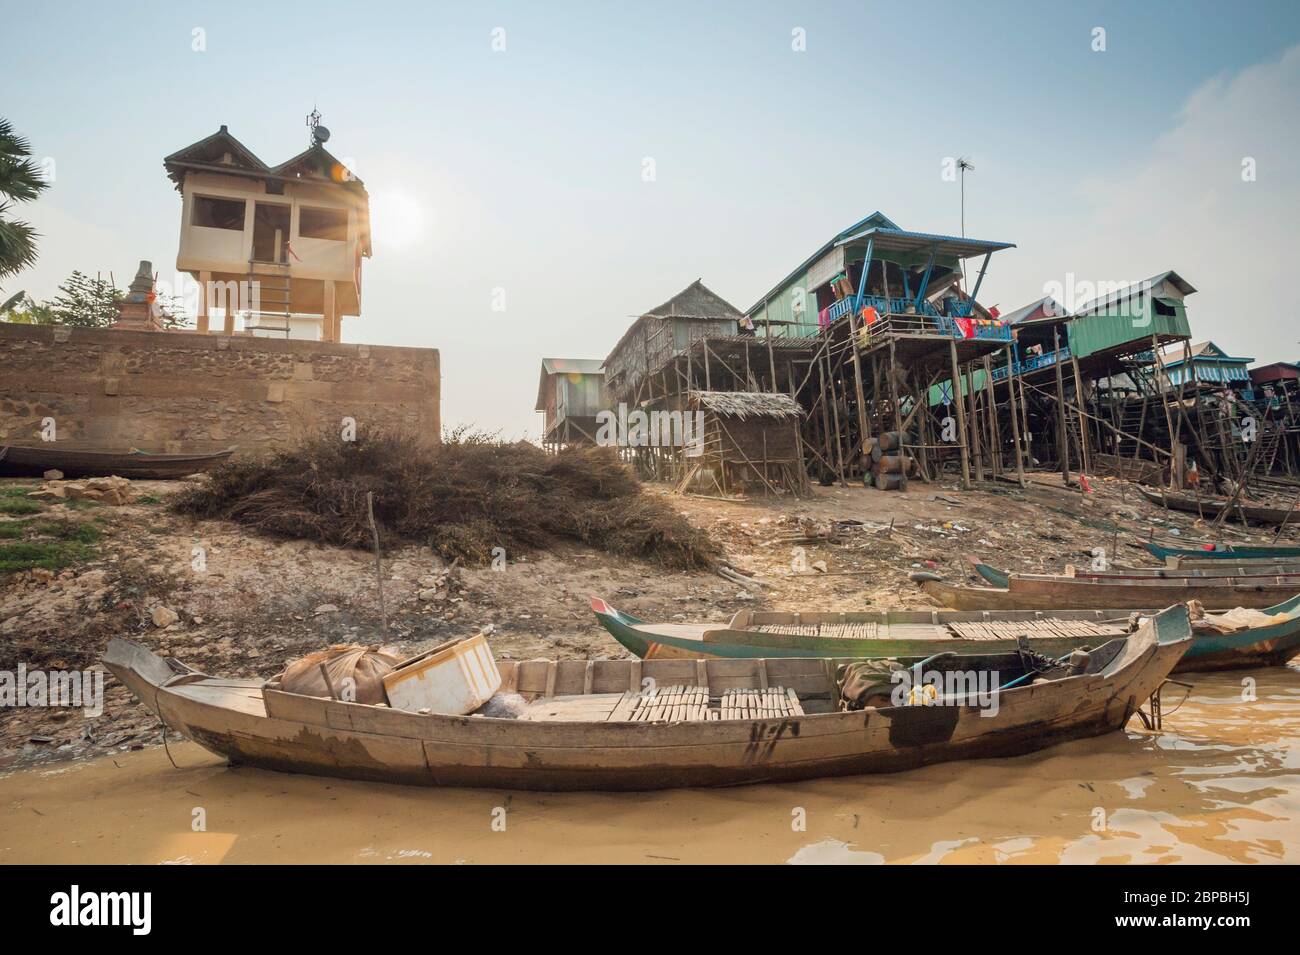 Bateaux sur la rivière et maisons sur pilotis à Kampong Phluk, province de Siem Reap, centre-nord du Cambodge, Asie du Sud-est Banque D'Images